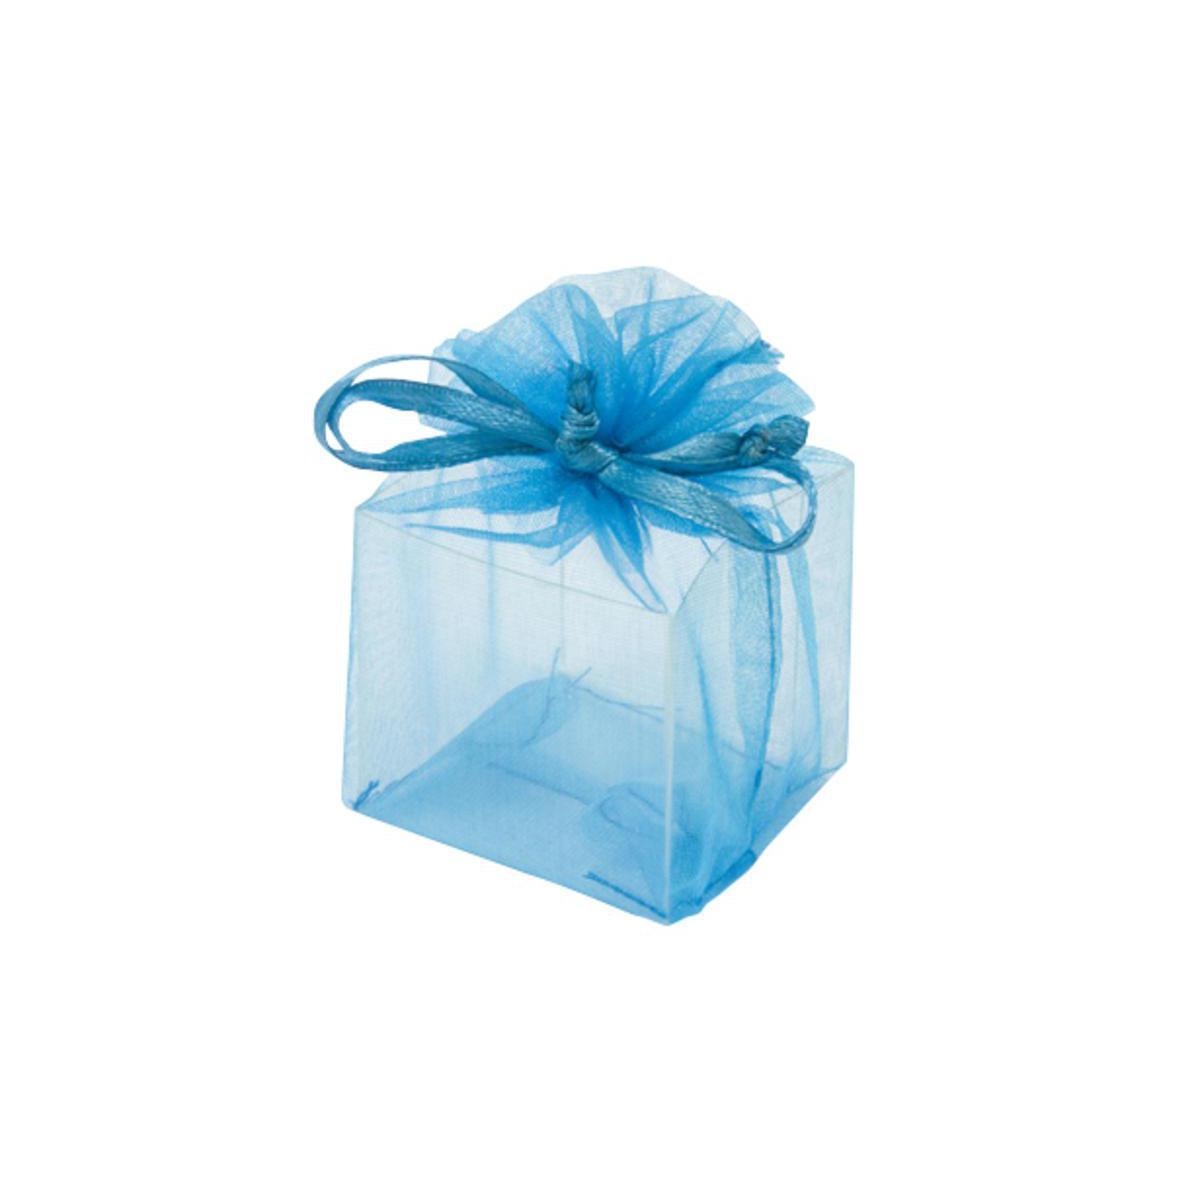 Carré transparent - Plastique et organza - 4 x 4 x 7 cm - Turquoise